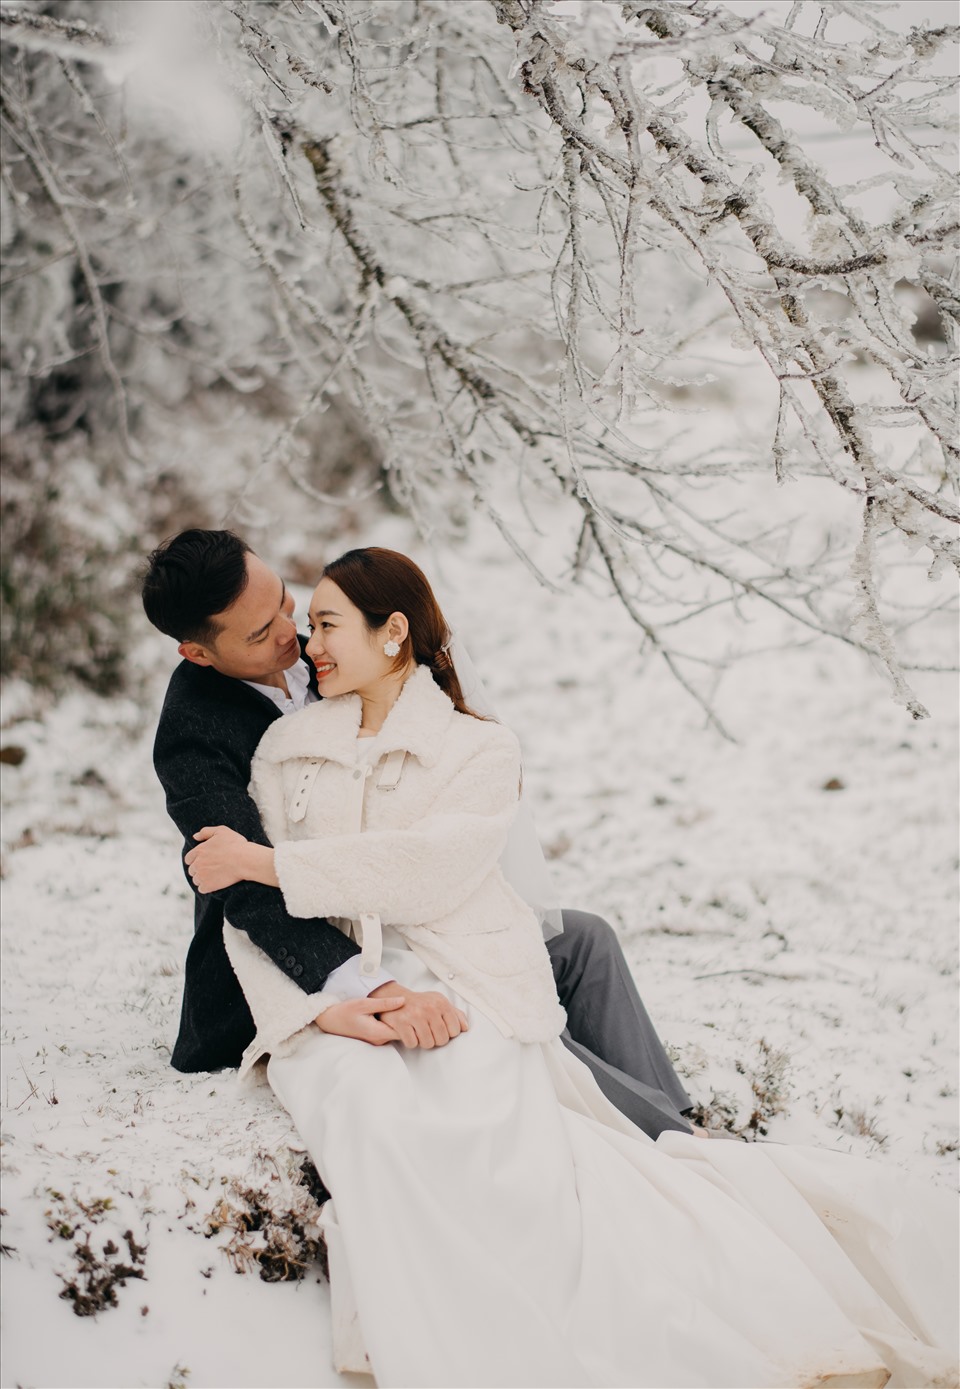 Nắm chặt tay của người yêu và cùng nhau bước vào trận mưa tuyết chụp ảnh cưới đầy lãng mạn tại Sapa. Bức ảnh của bạn sẽ trở nên thật ấn tượng và độc đáo.